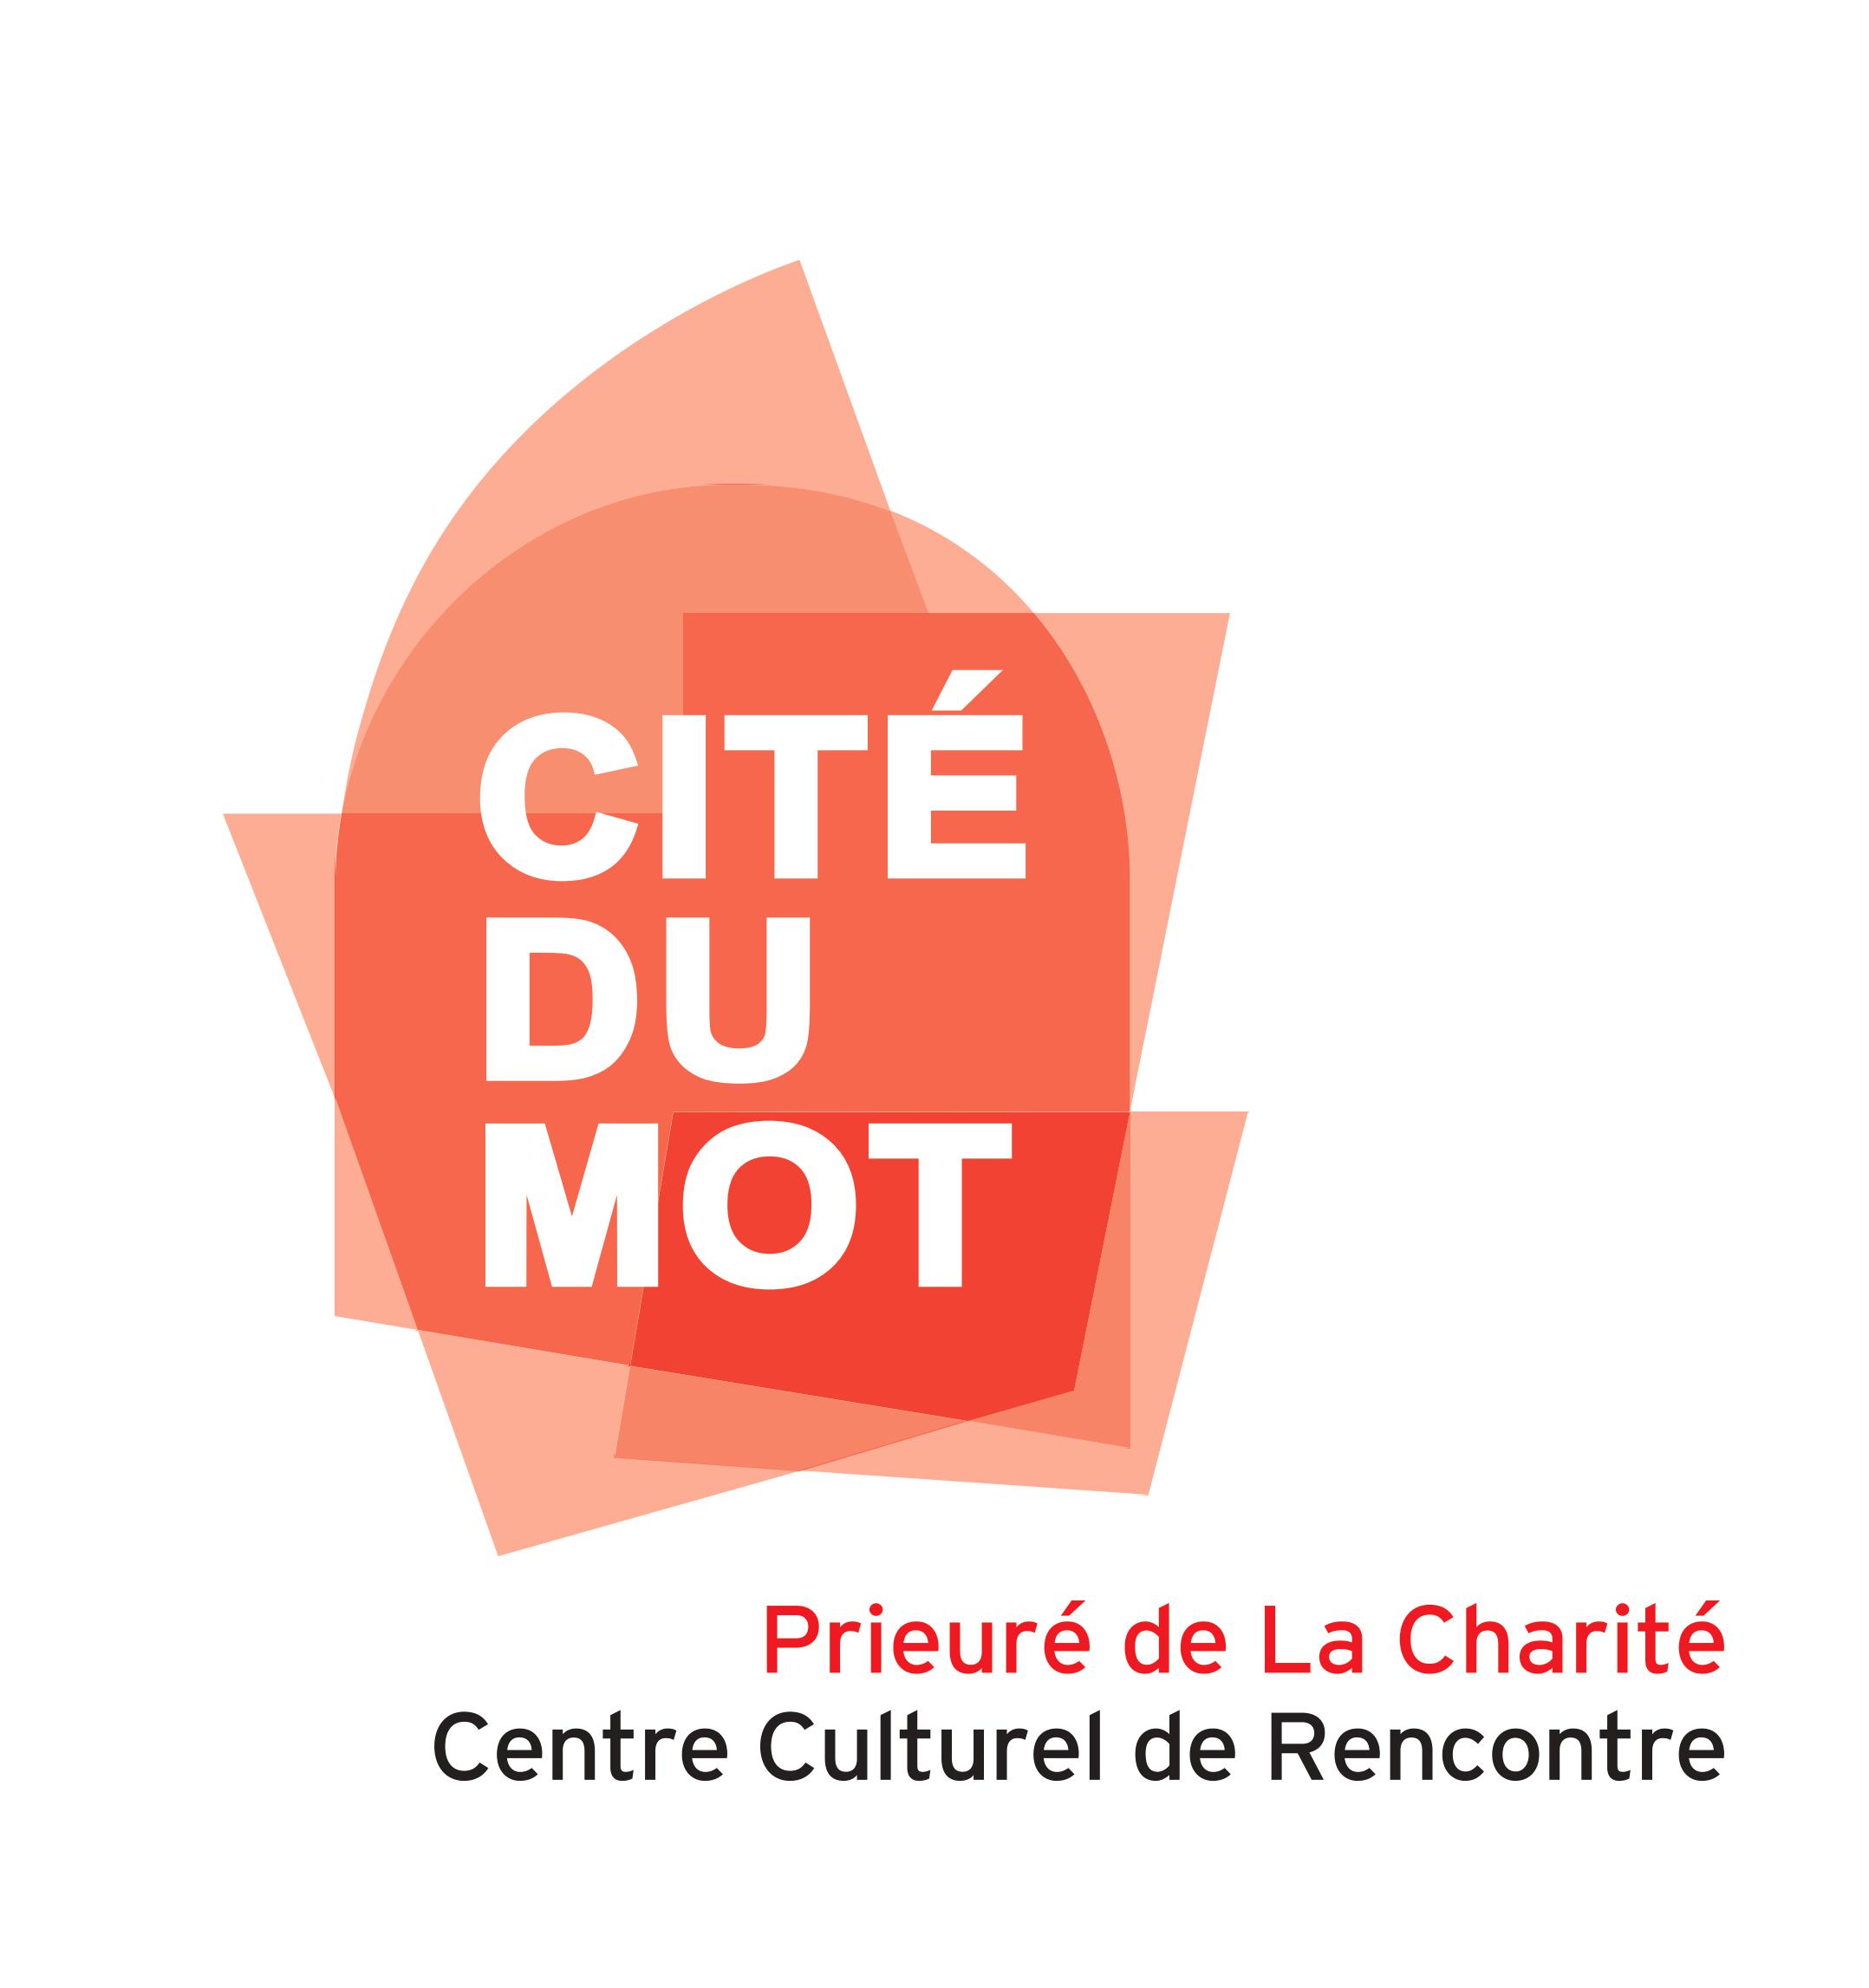 Cité du Mot, prieuré de La Charité, centre culturel de rencontre